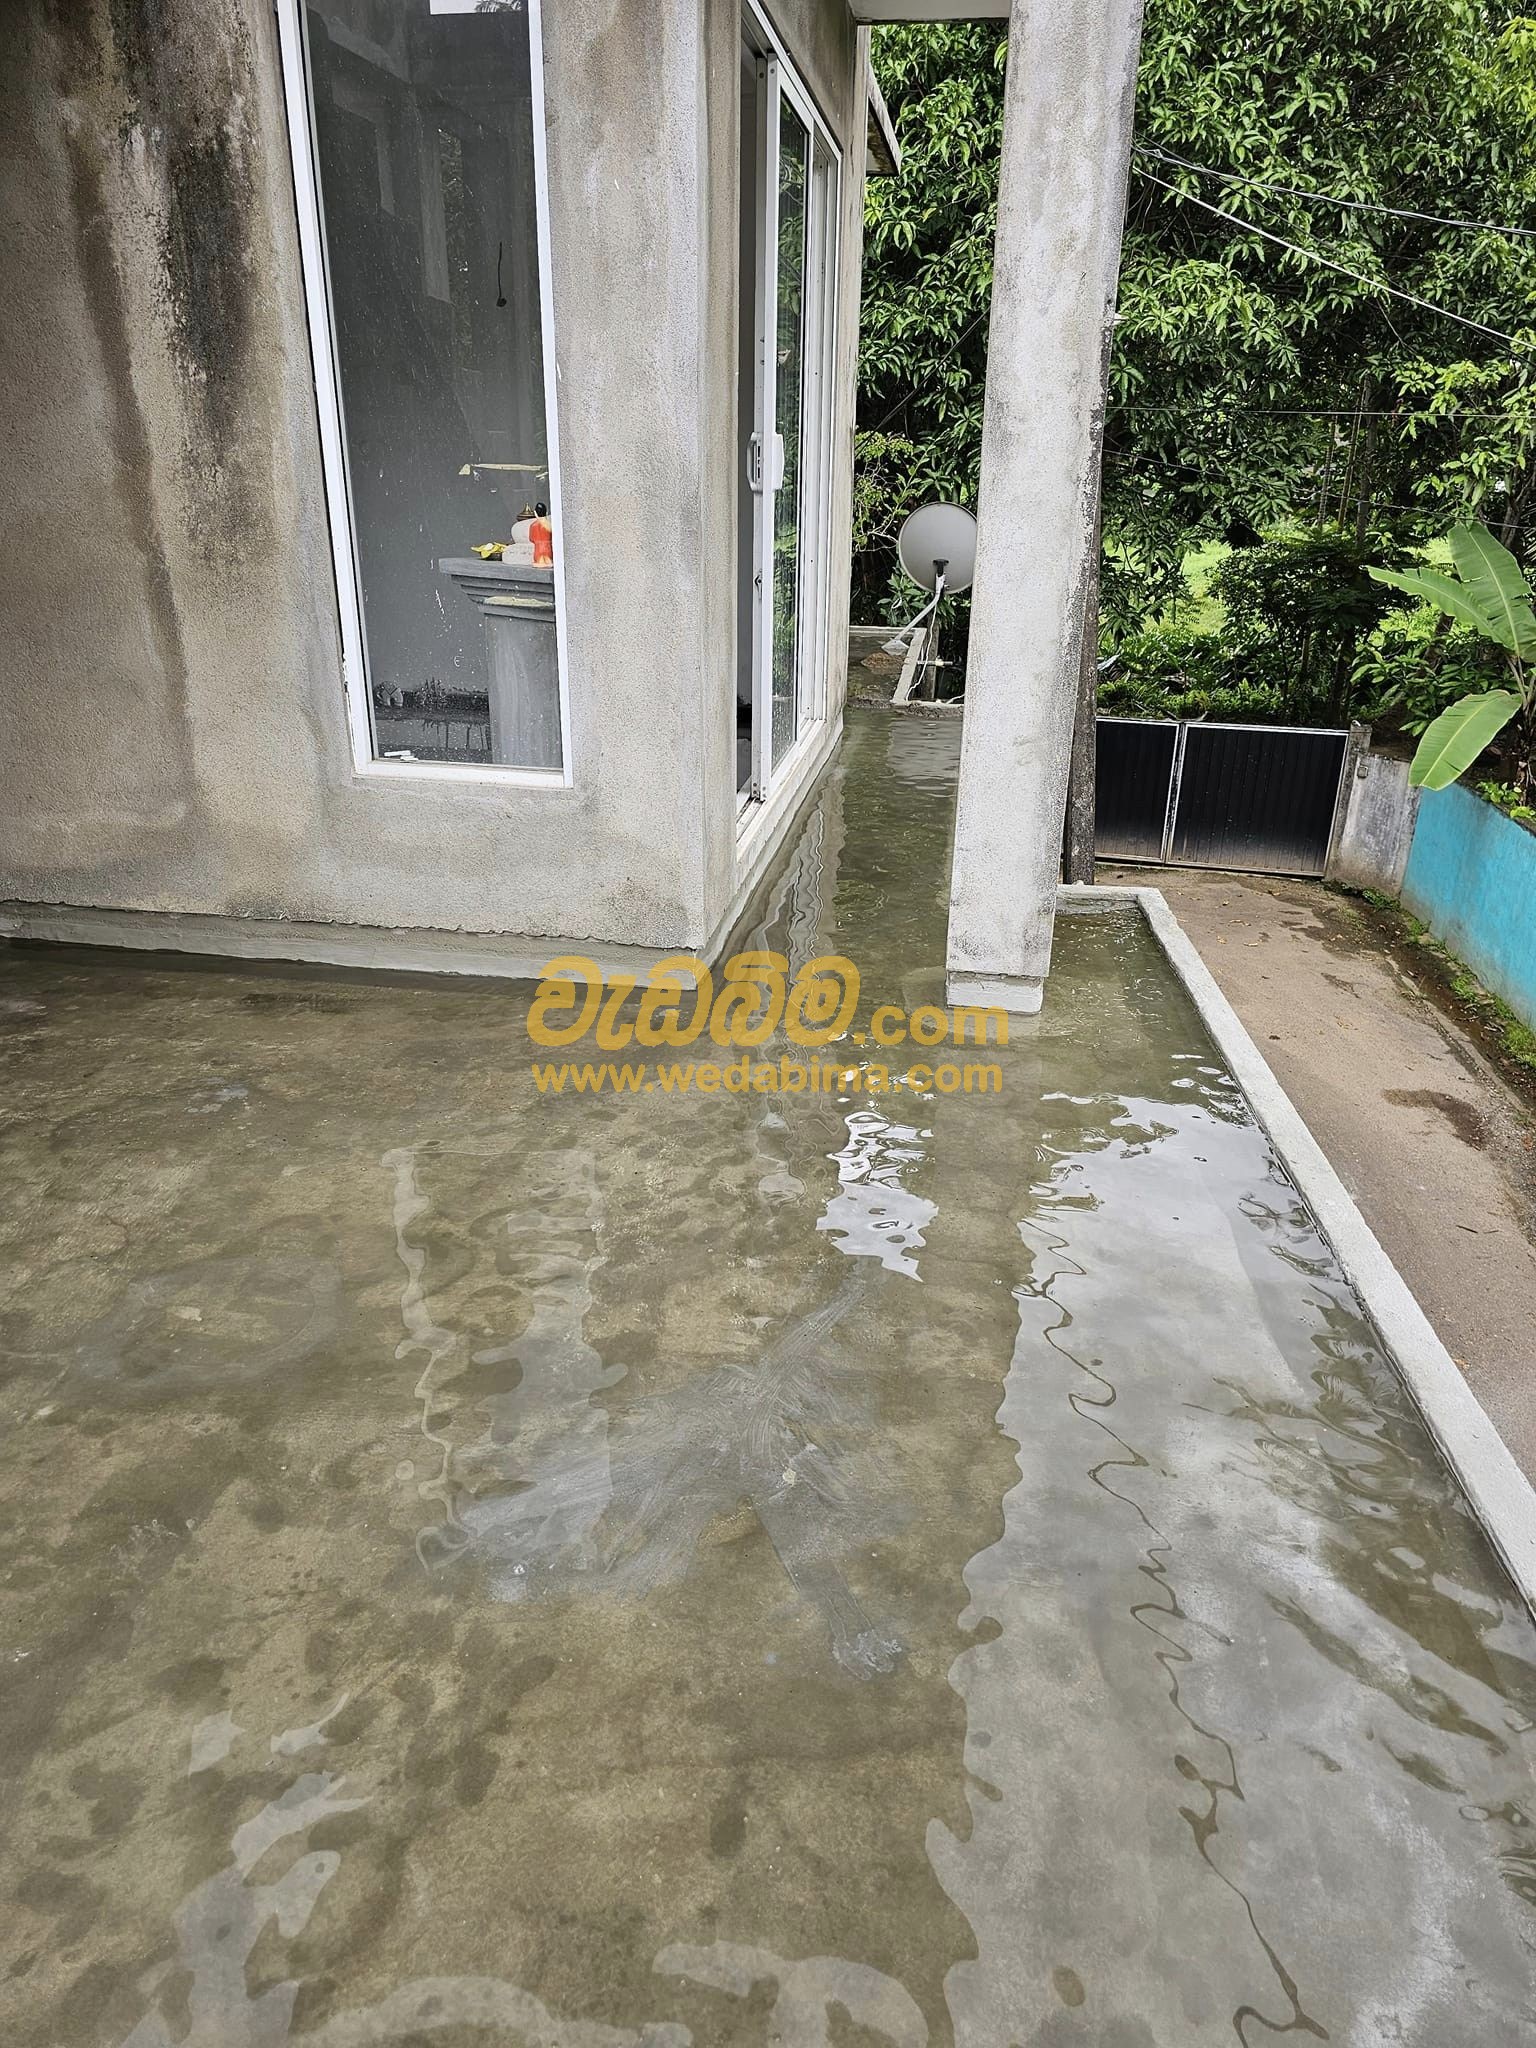 Waterproofing Solution In Srilanka